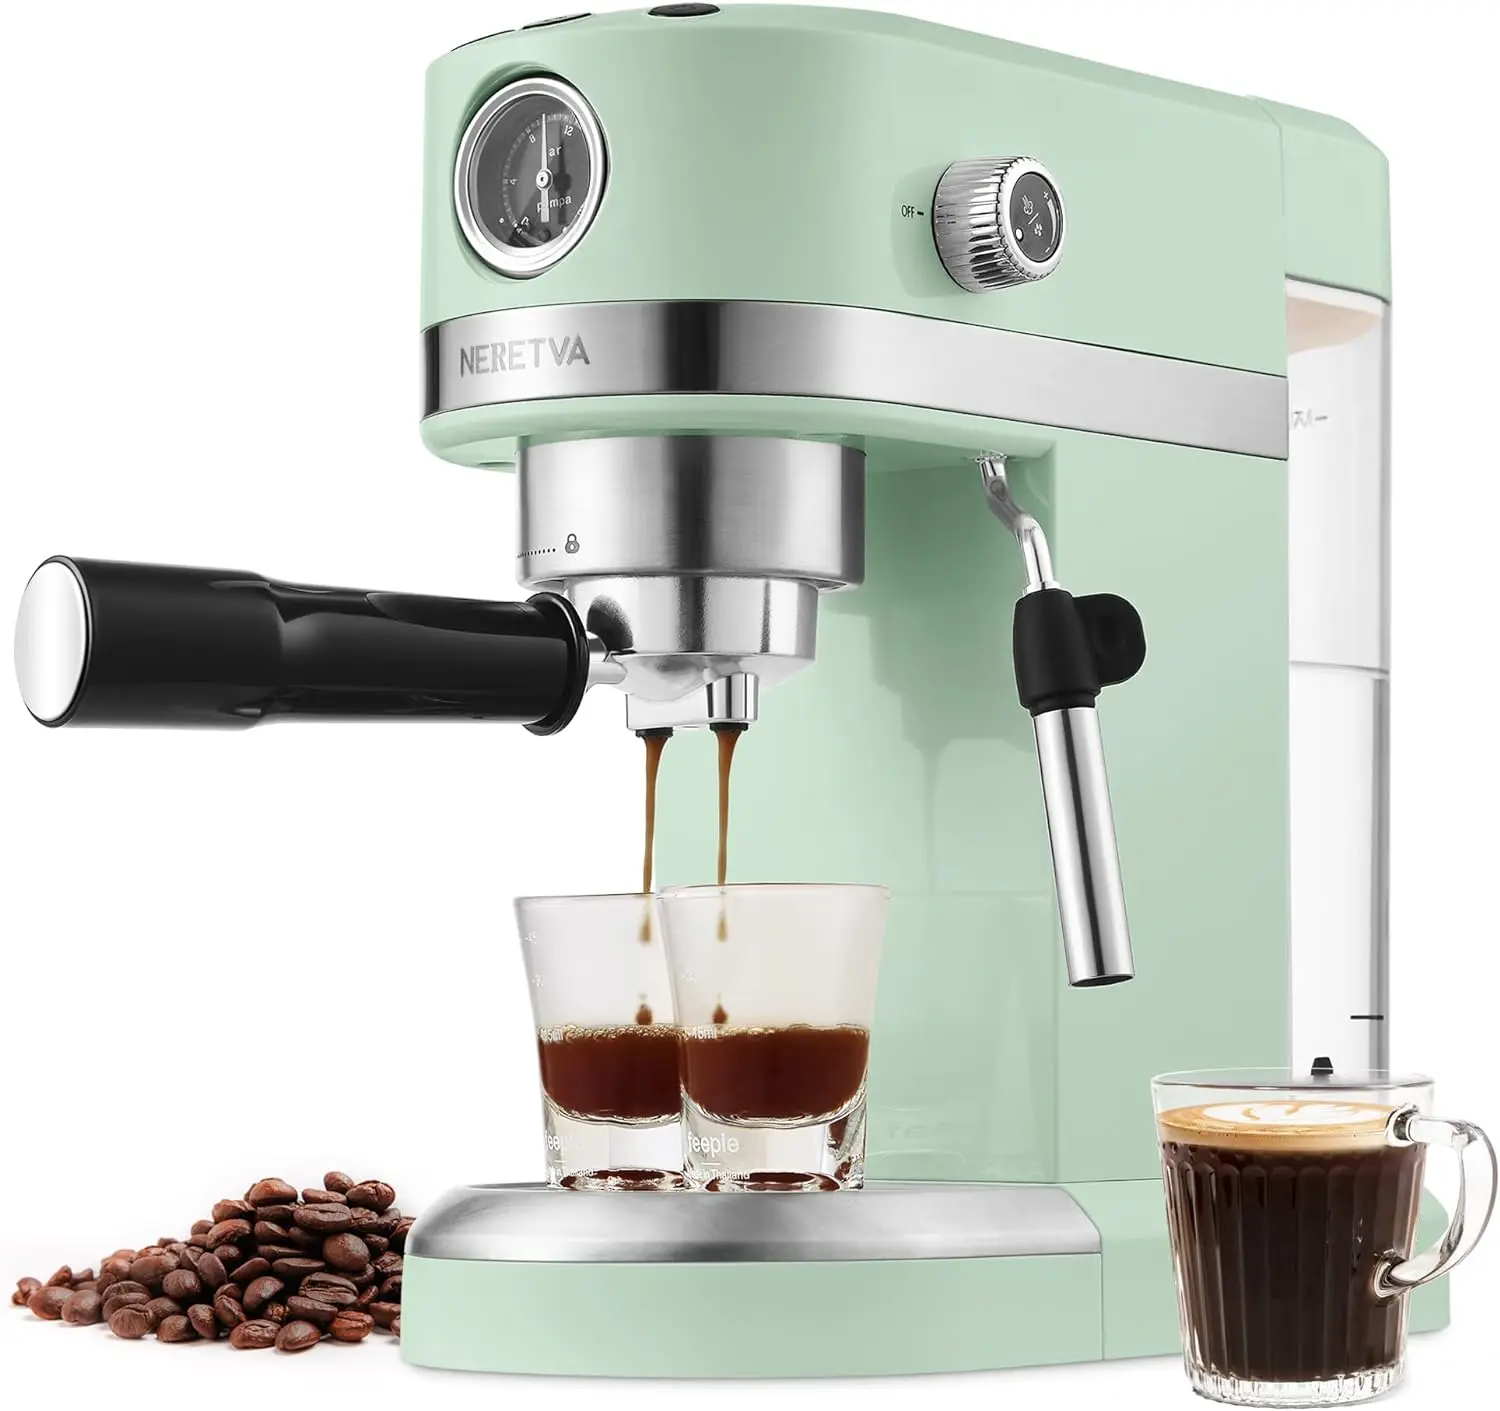 

20 Bar Espresso Coffee Machine with Steam Wand for Latte Espresso and Cappuccino, Compact Espresso Maker For Home Barista, 1350W